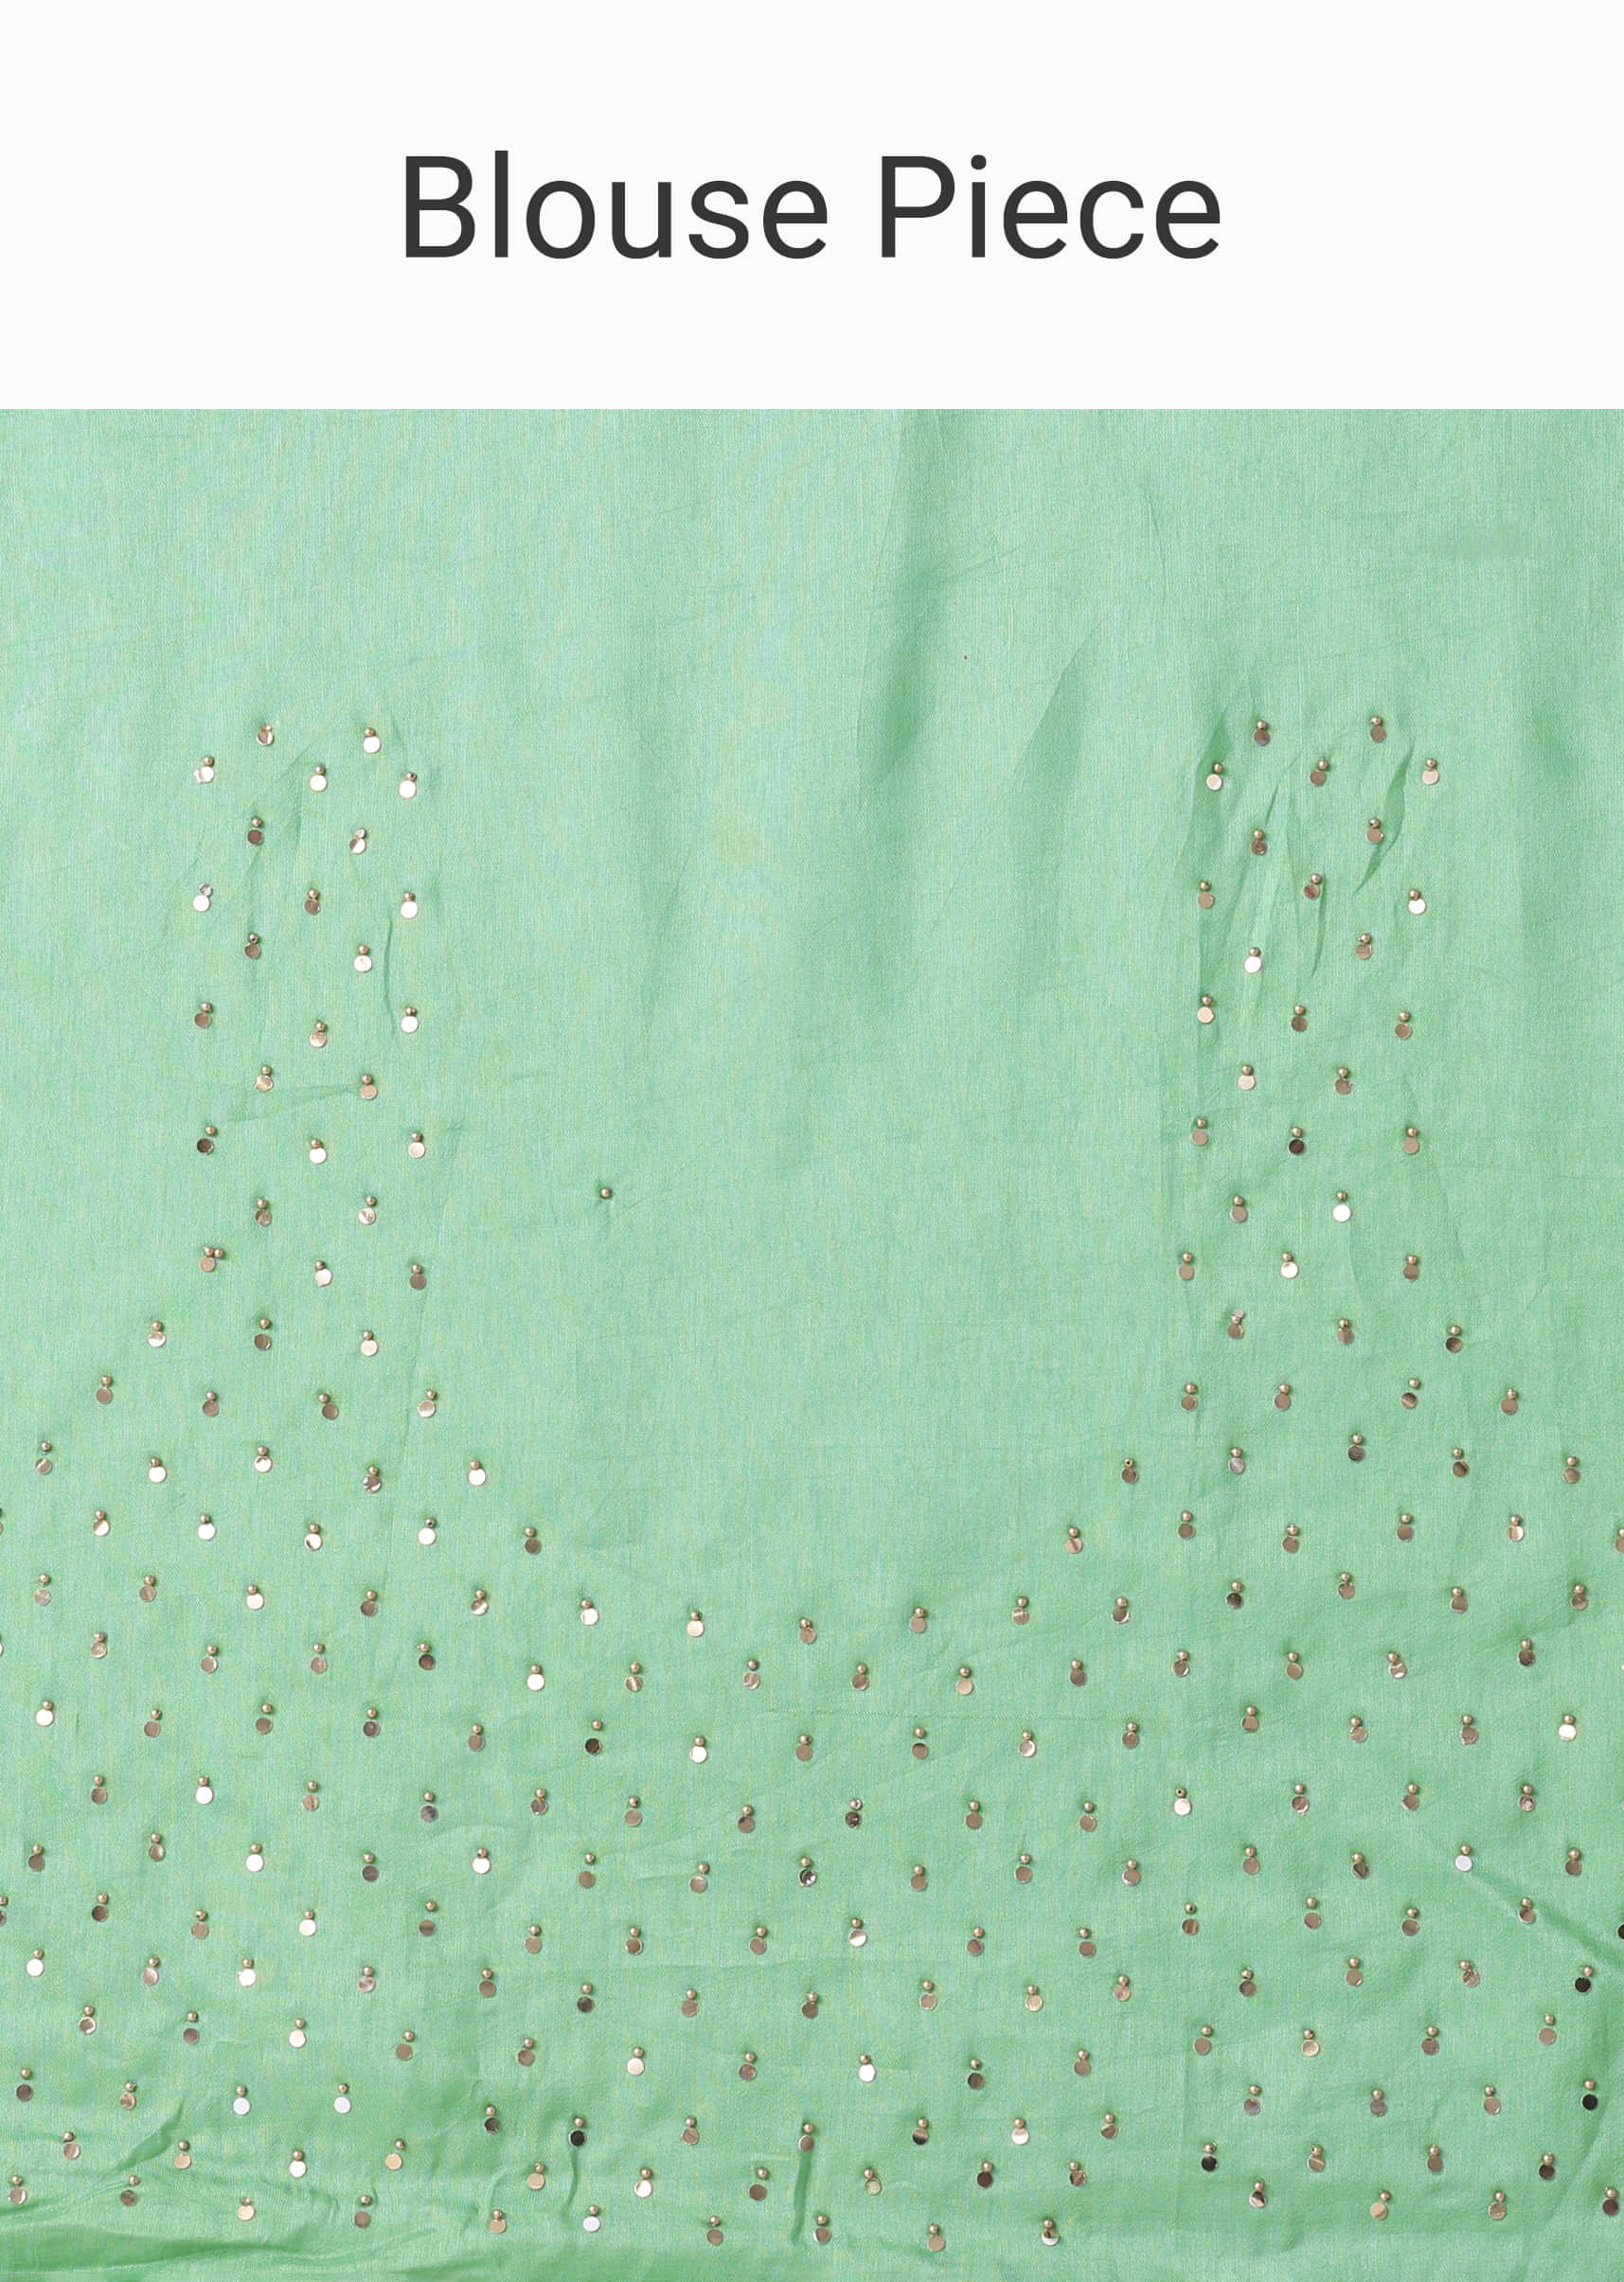 Jadesheen Green Embroidered Saree In Khadi Silk